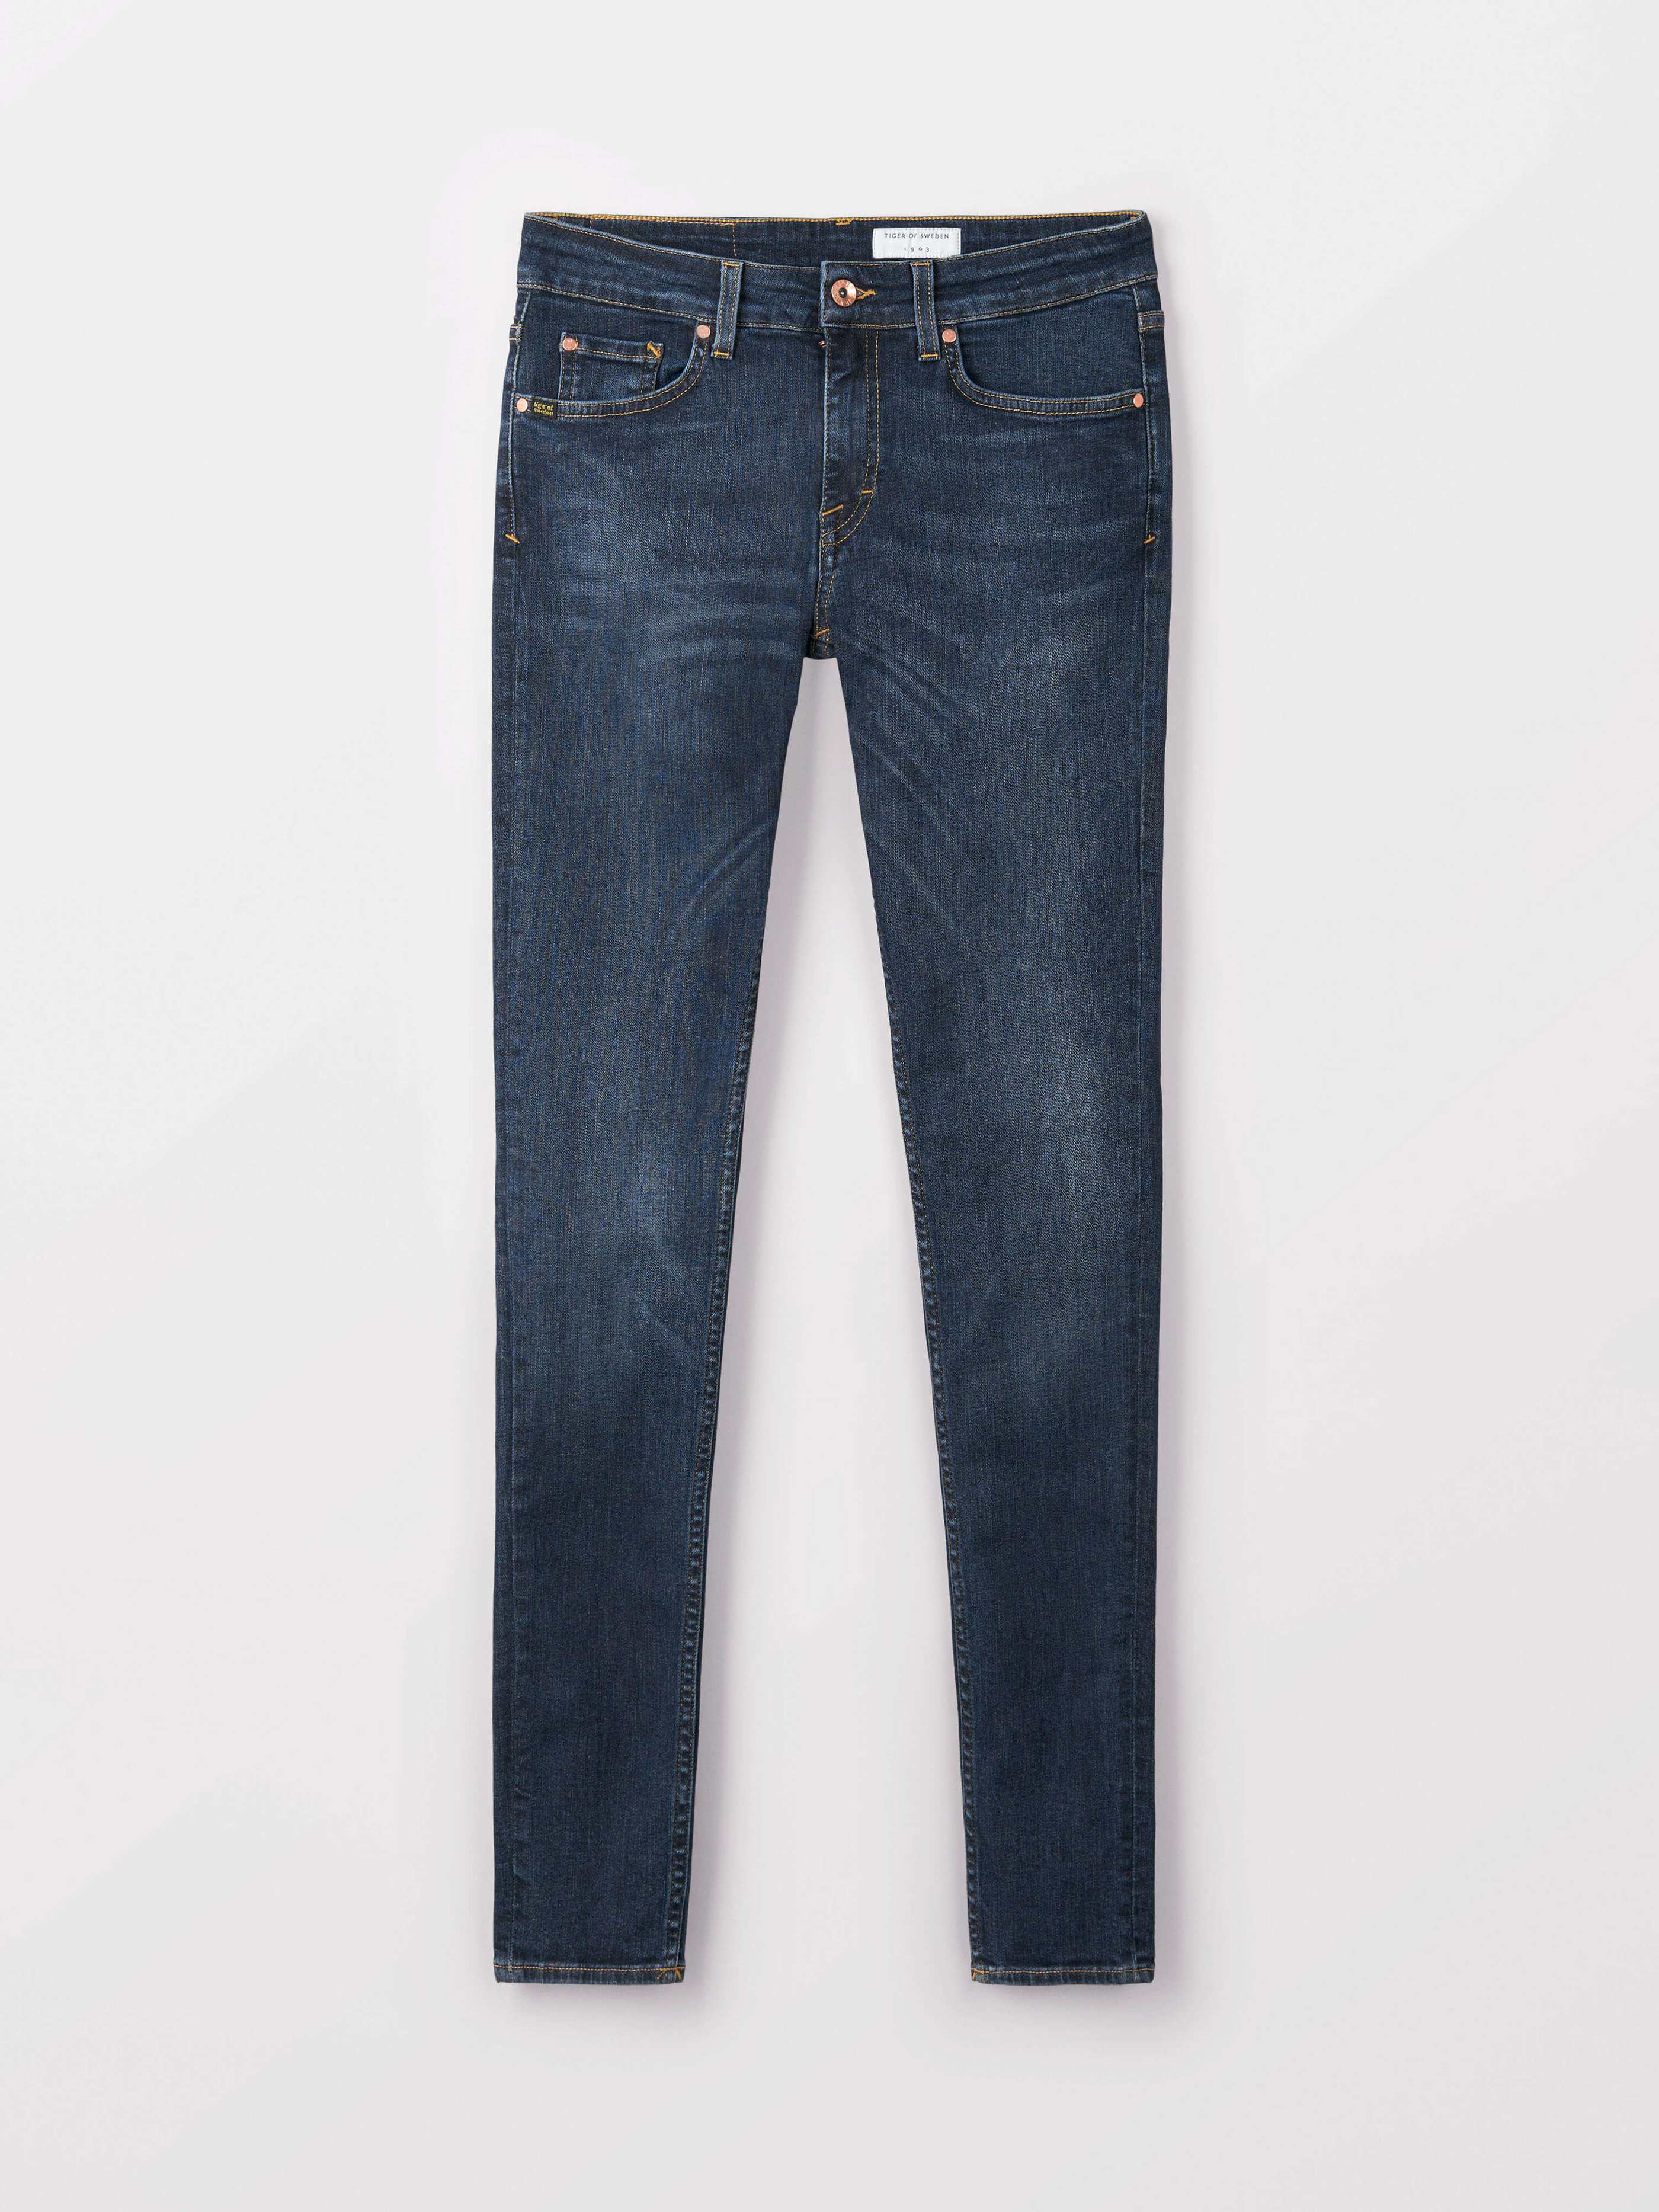 kontroversiel klart Fordi Tiger of Sweden Jeans, Slight jeans,